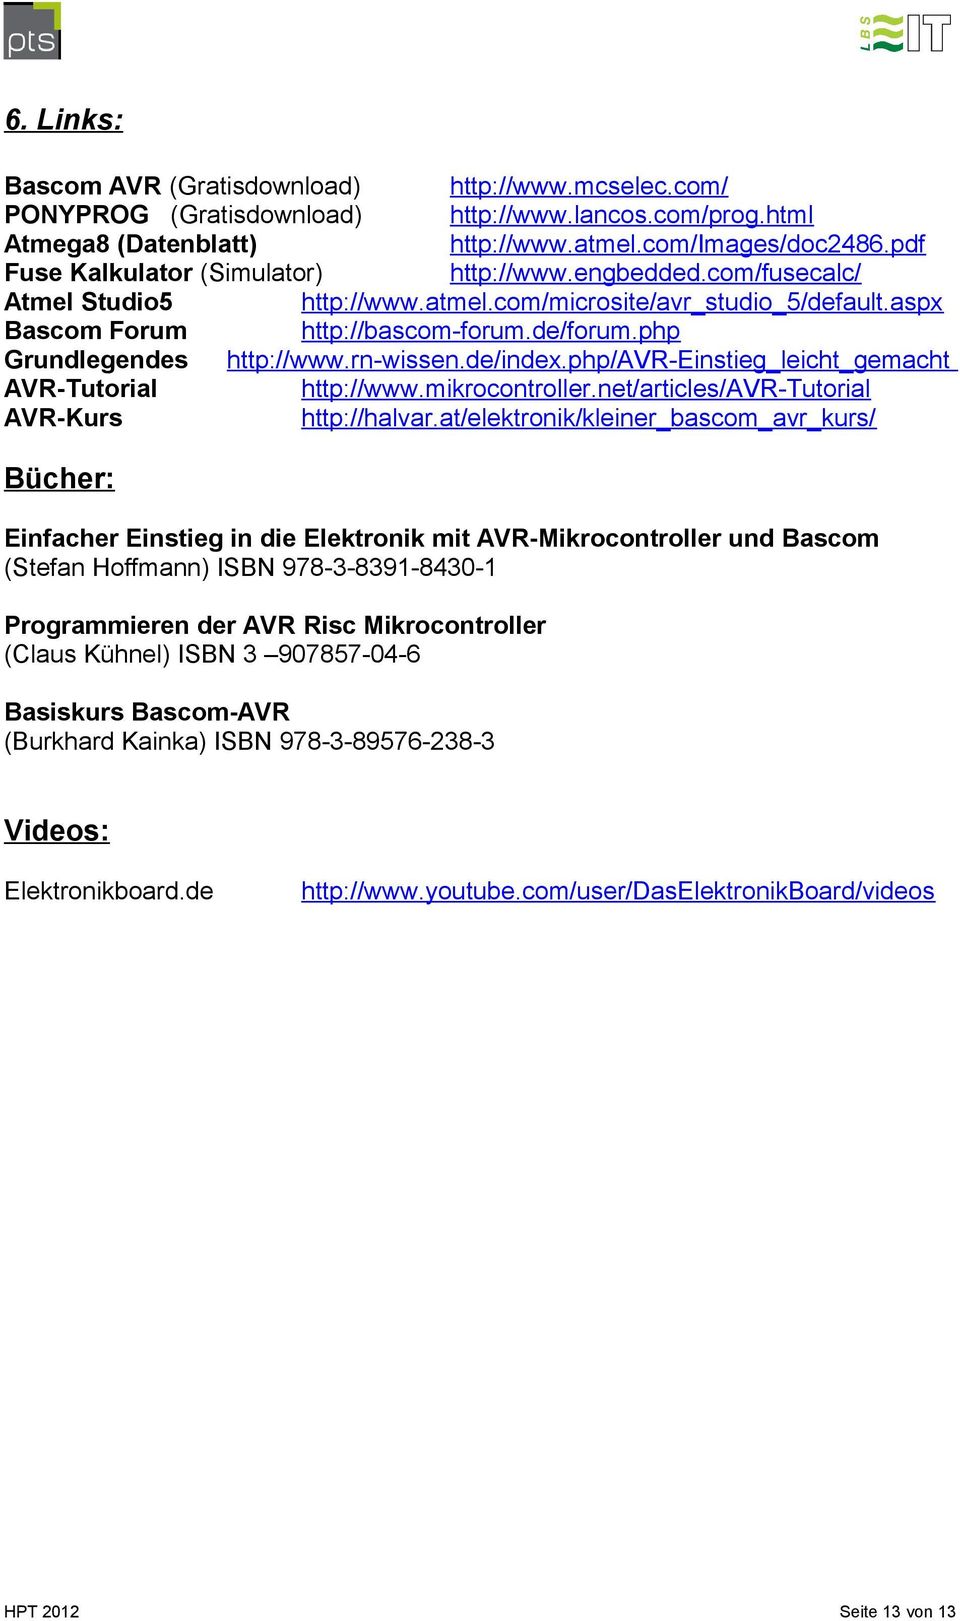 php Grundlegendes http://www.rn-wissen.de/index.php/avr-einstieg_leicht_gemacht AVR-Tutorial http://www.mikrocontroller.net/articles/avr-tutorial AVR-Kurs http://halvar.